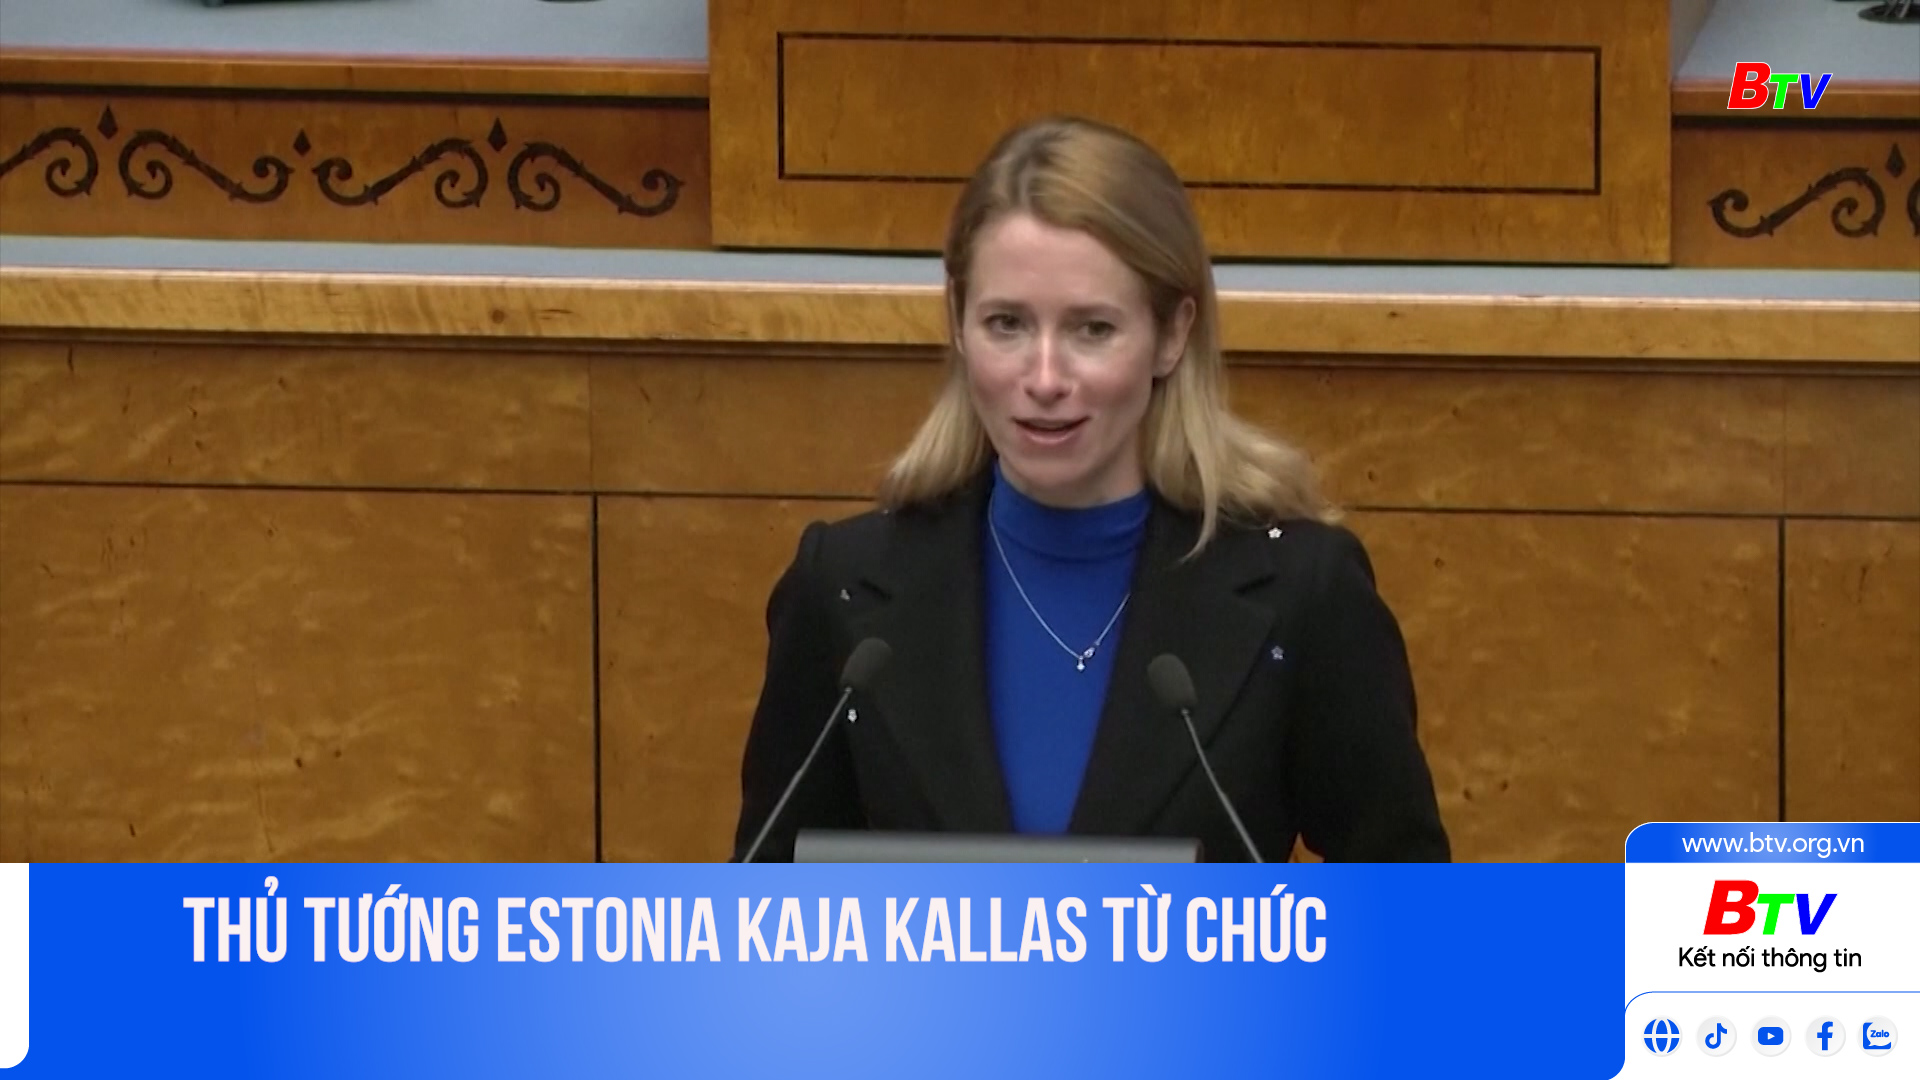 Thủ tướng Estonia Kaja Kallas từ chức